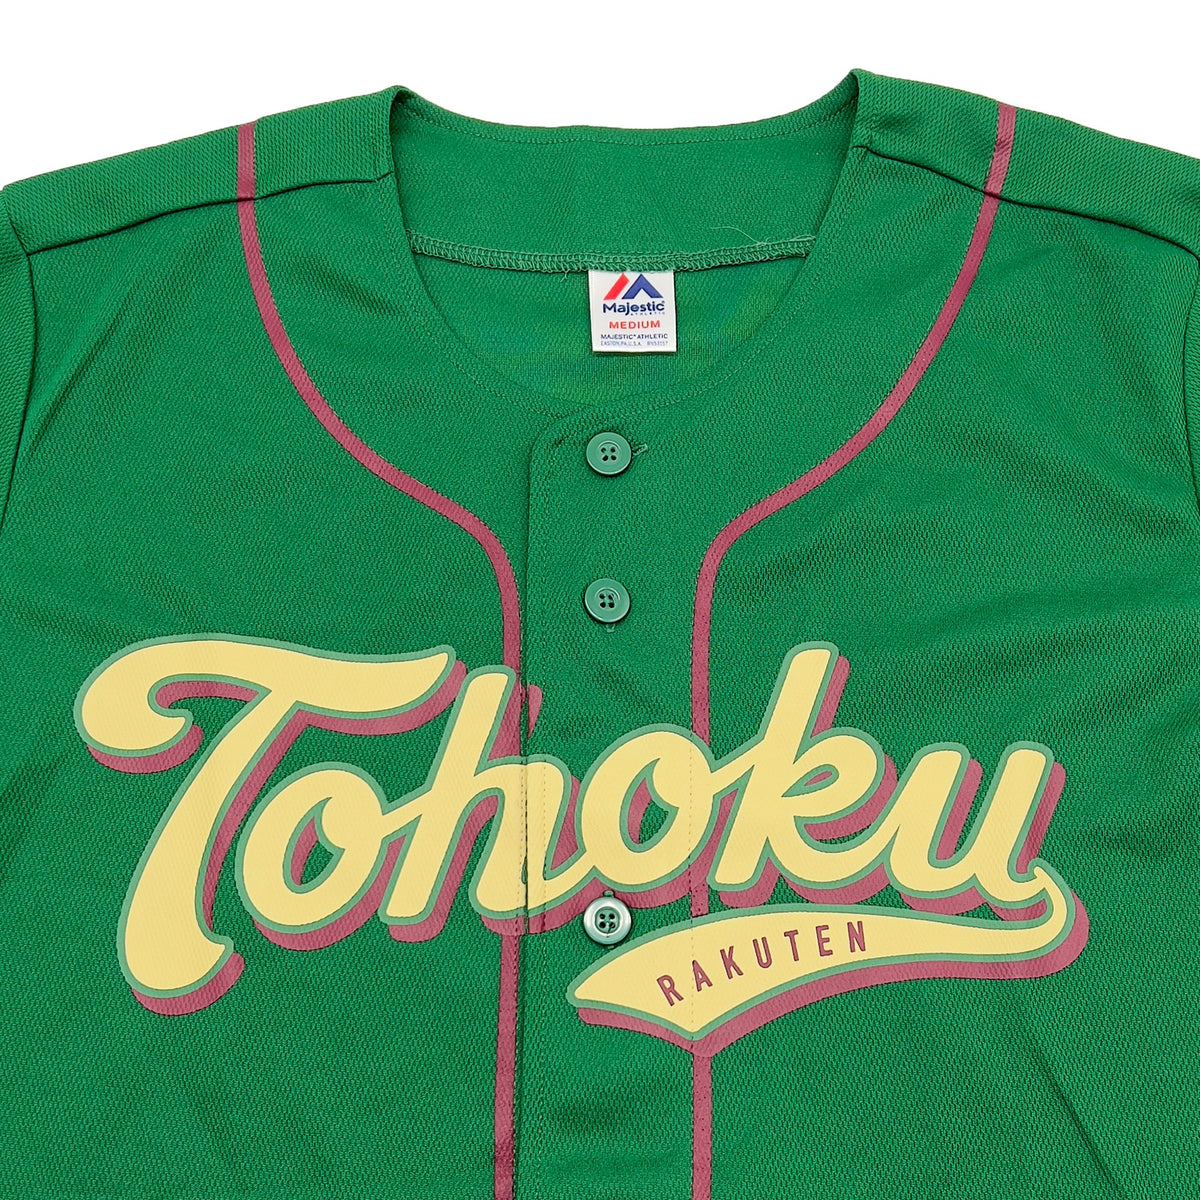 New Retro NPB Japan Baseball Majestic Tohoku Rakuten Eagles Jersey Green - Sugoi JDM